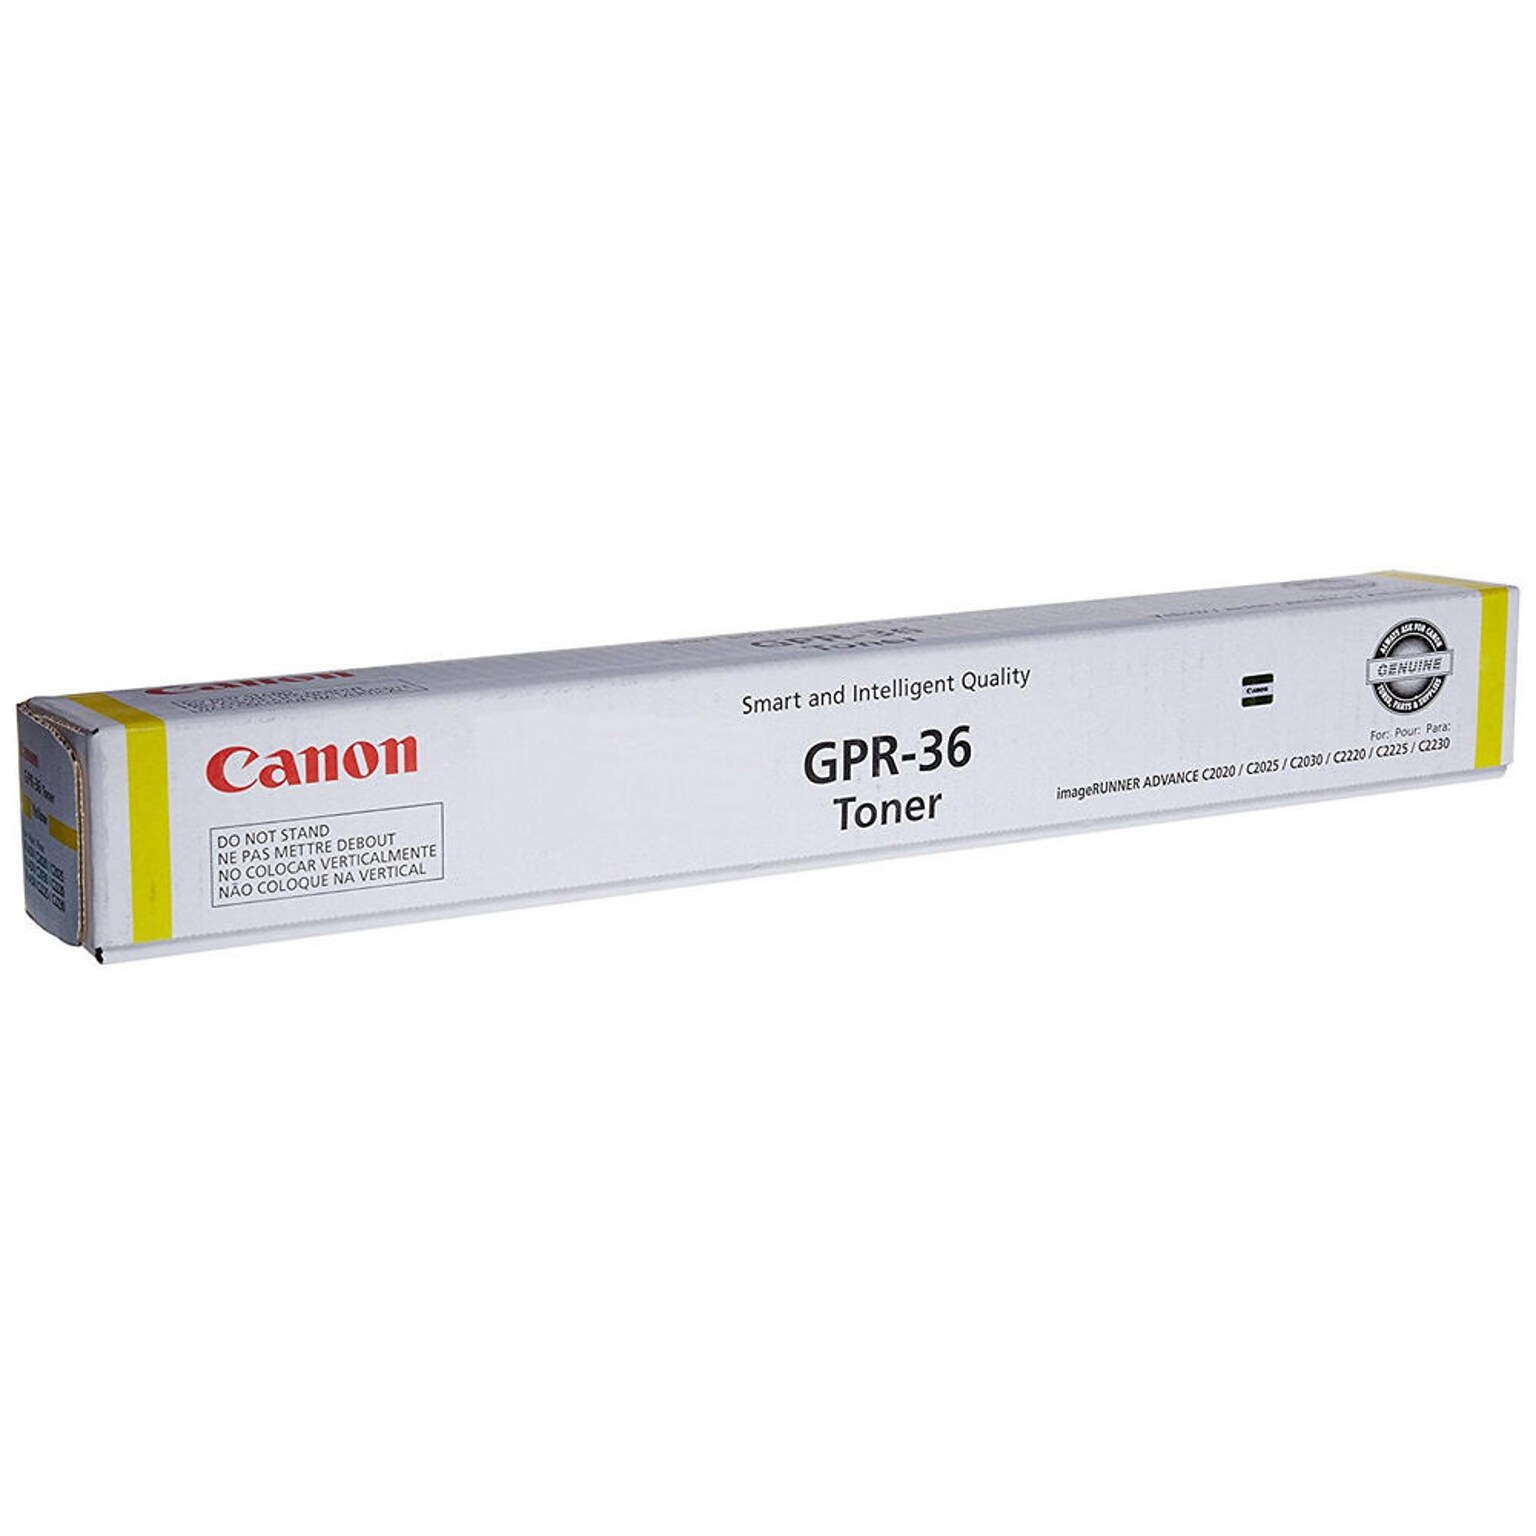 Canon GPR-36 Yellow Standard Yield Toner Cartridge (CNM3785B003AA)